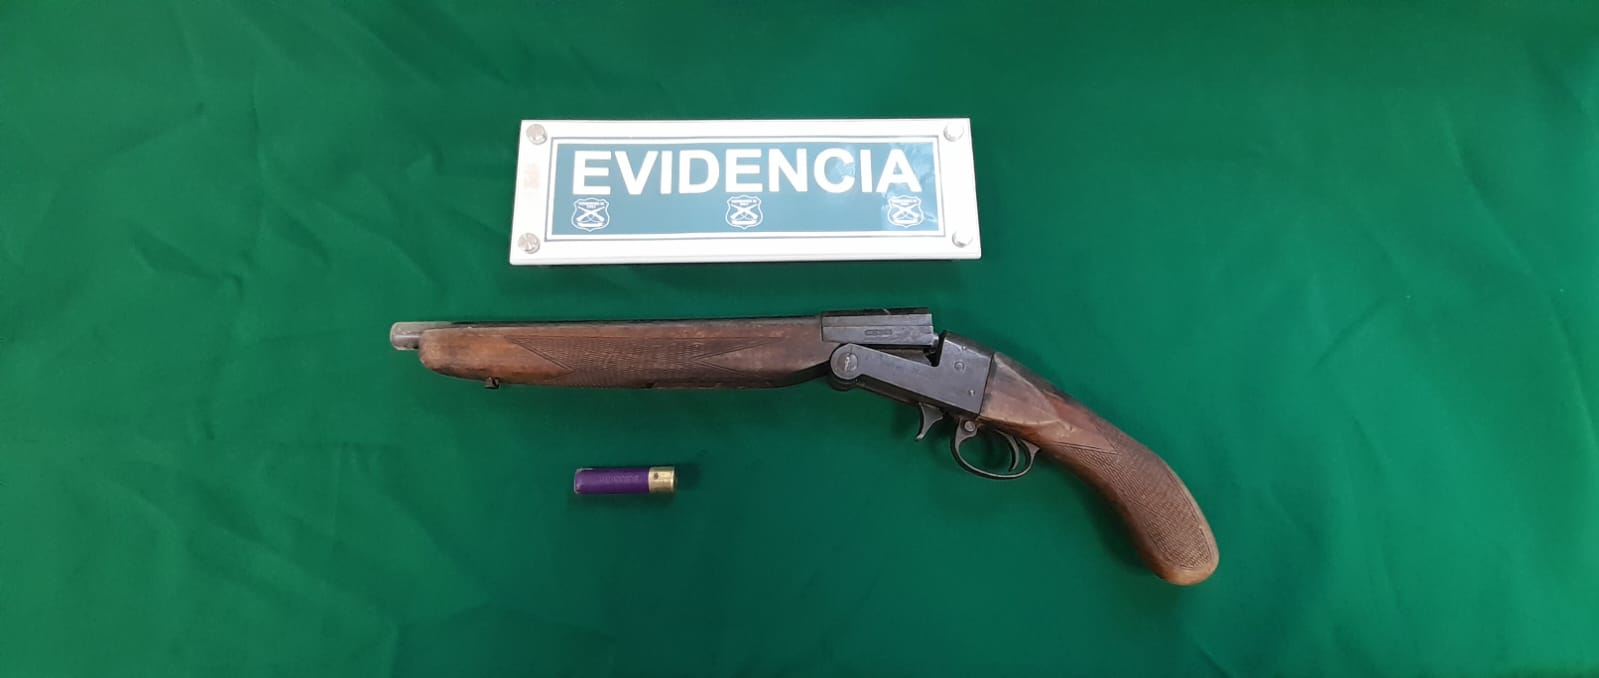 Esta escopeta usaron para intimidar a la víctima y robar su vehículo en Quillota.